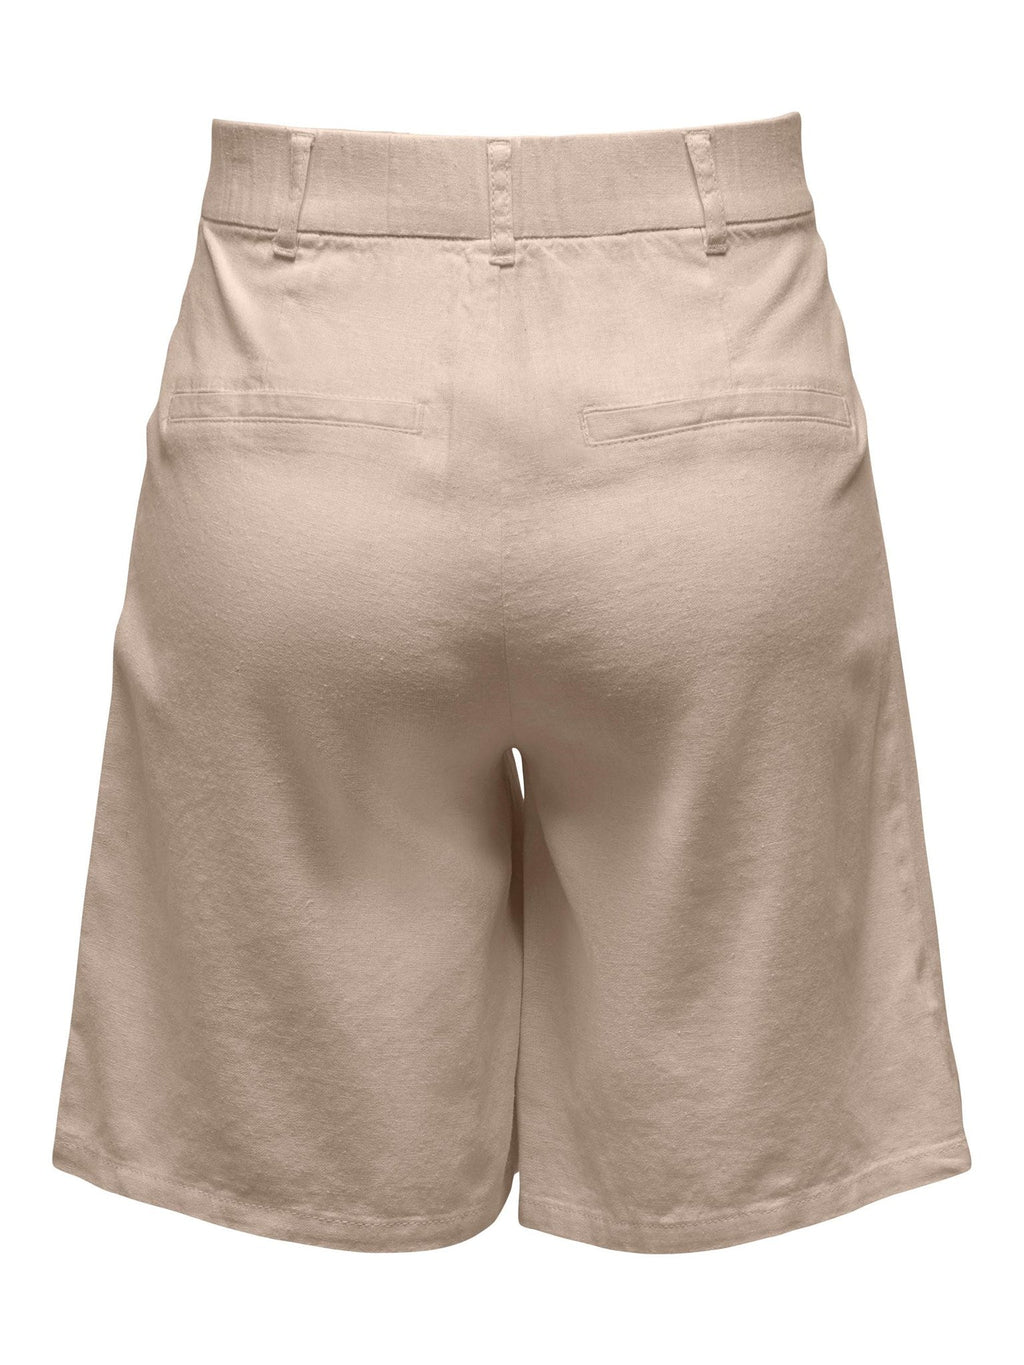 Caro High Maist Shorts - Oxford Tan